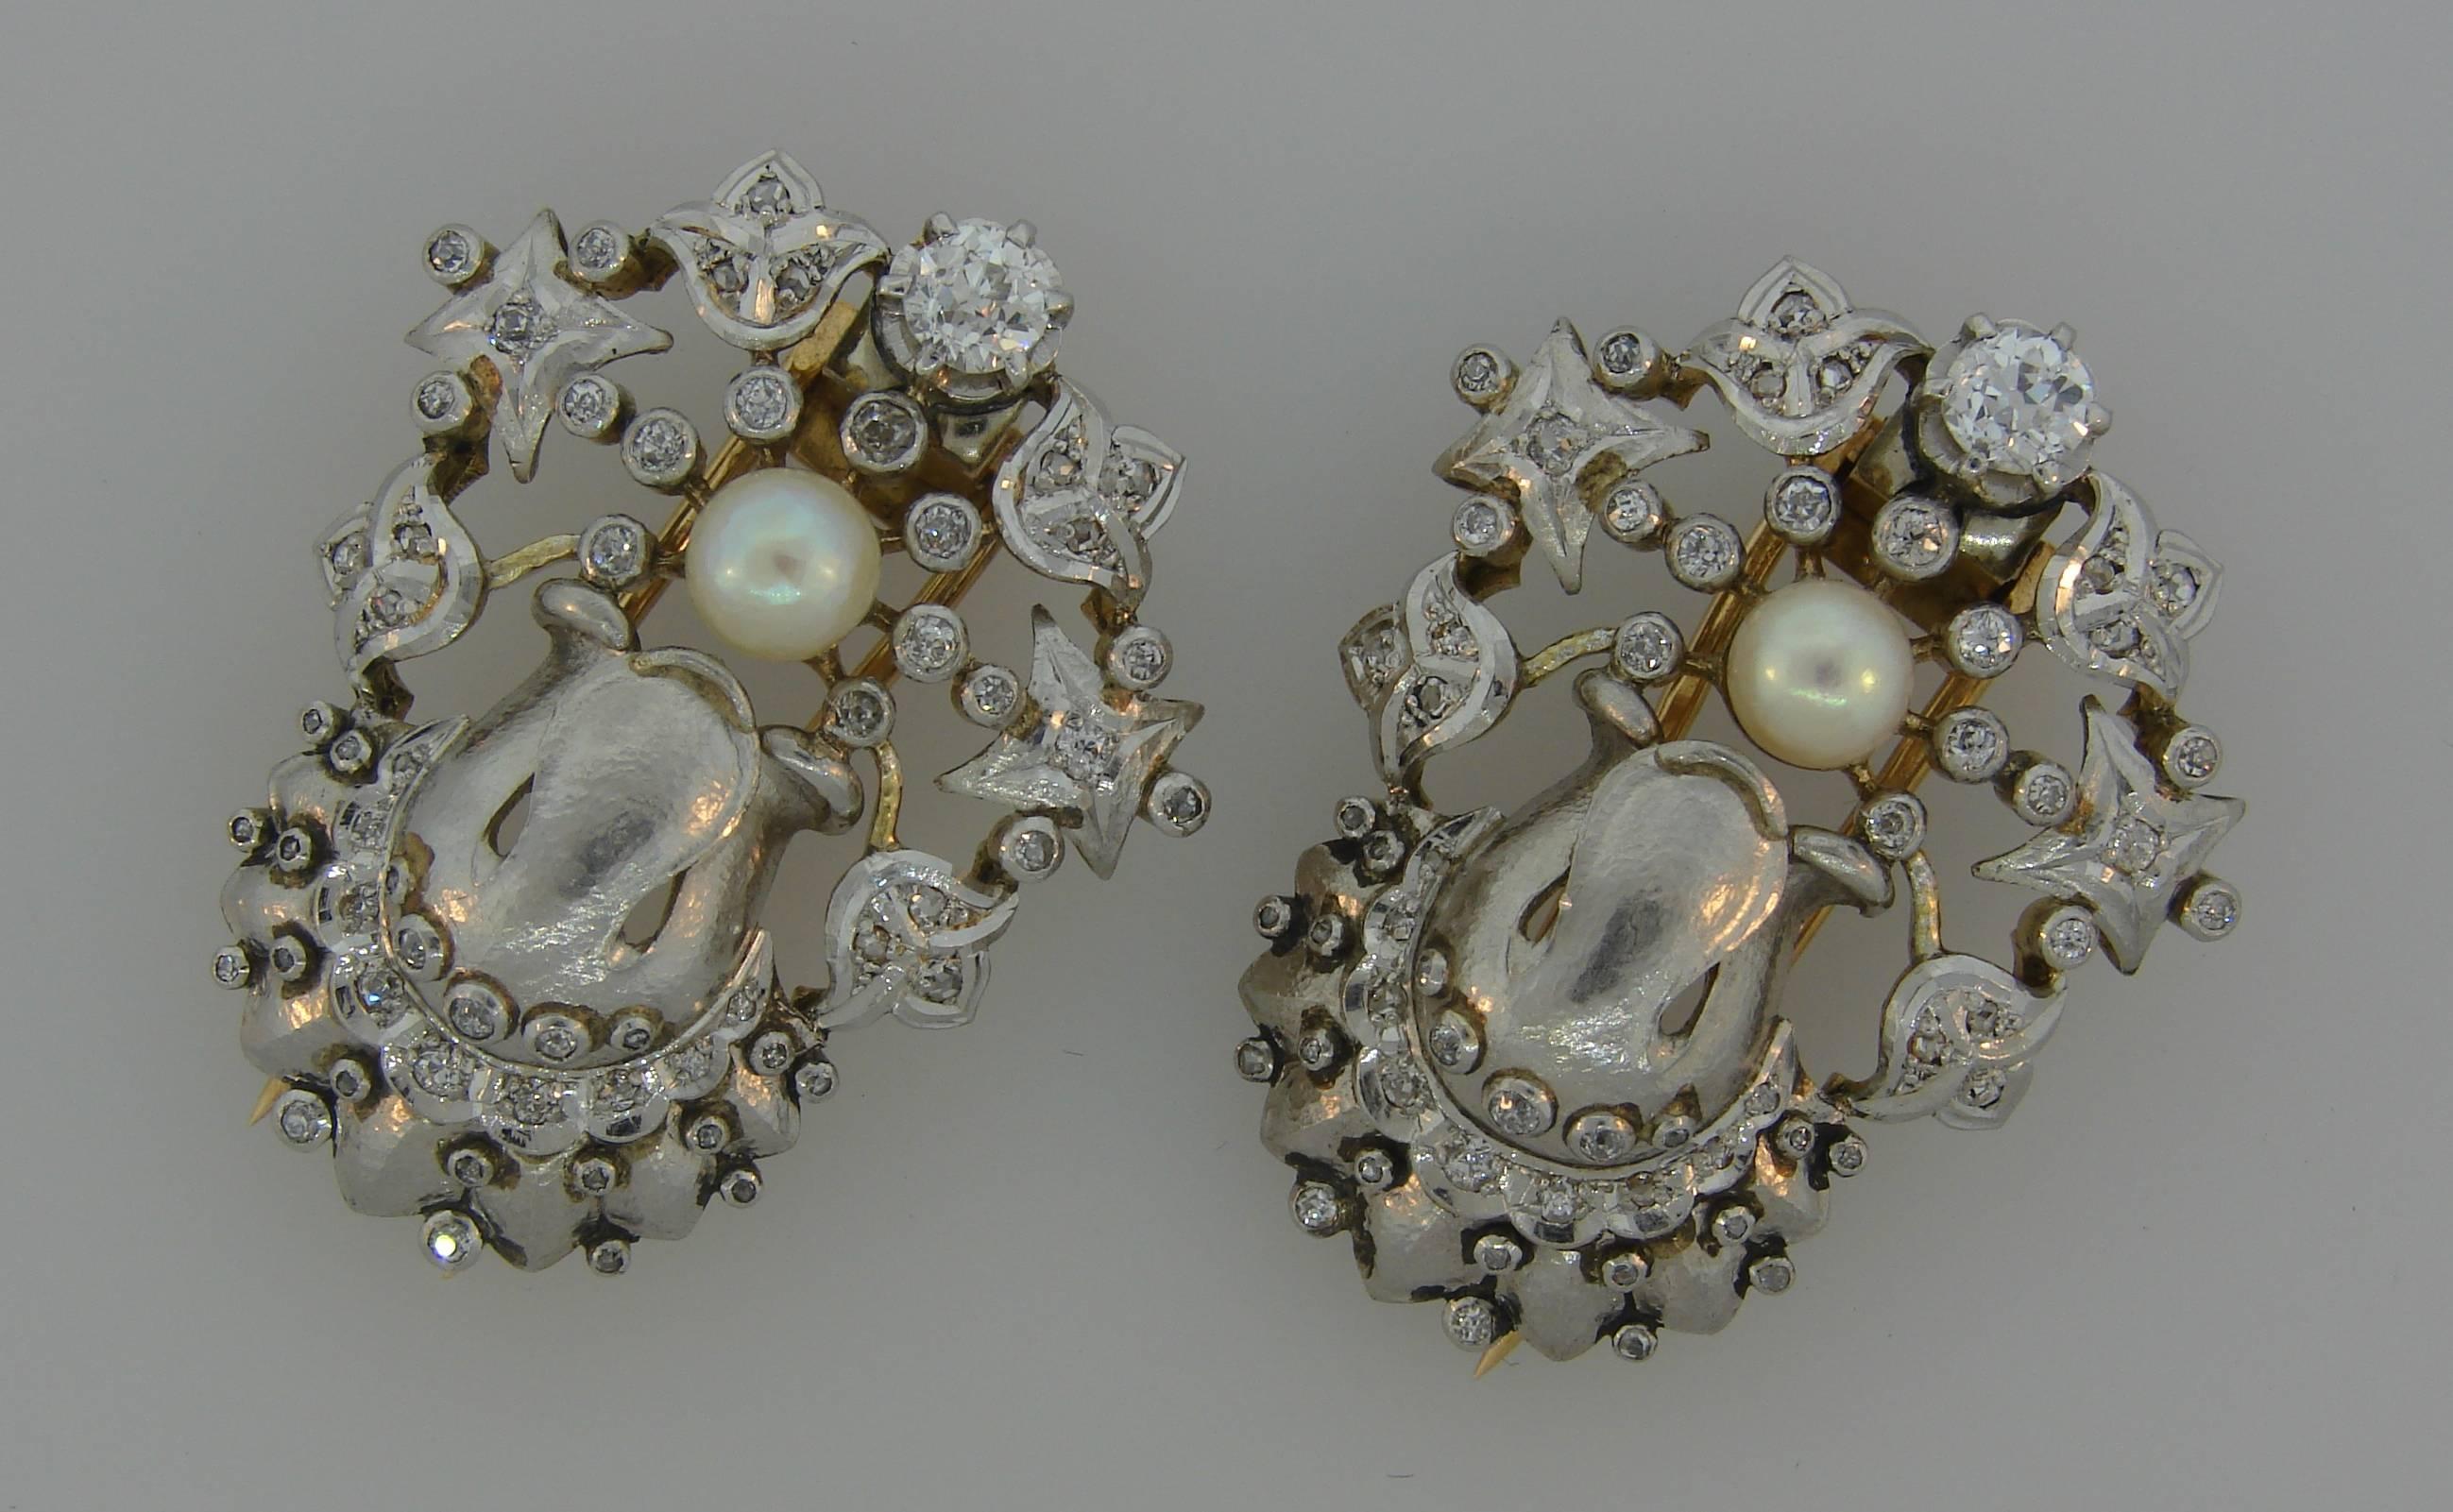 Une paire de pinces doubles créée en France dans les années 1930. Insolite et chic à la française, cette paire est un excellent complément à votre collection de bijoux.
Réalisé en platine (testé) et en or jaune 18 carats (testé) et serti d'une perle